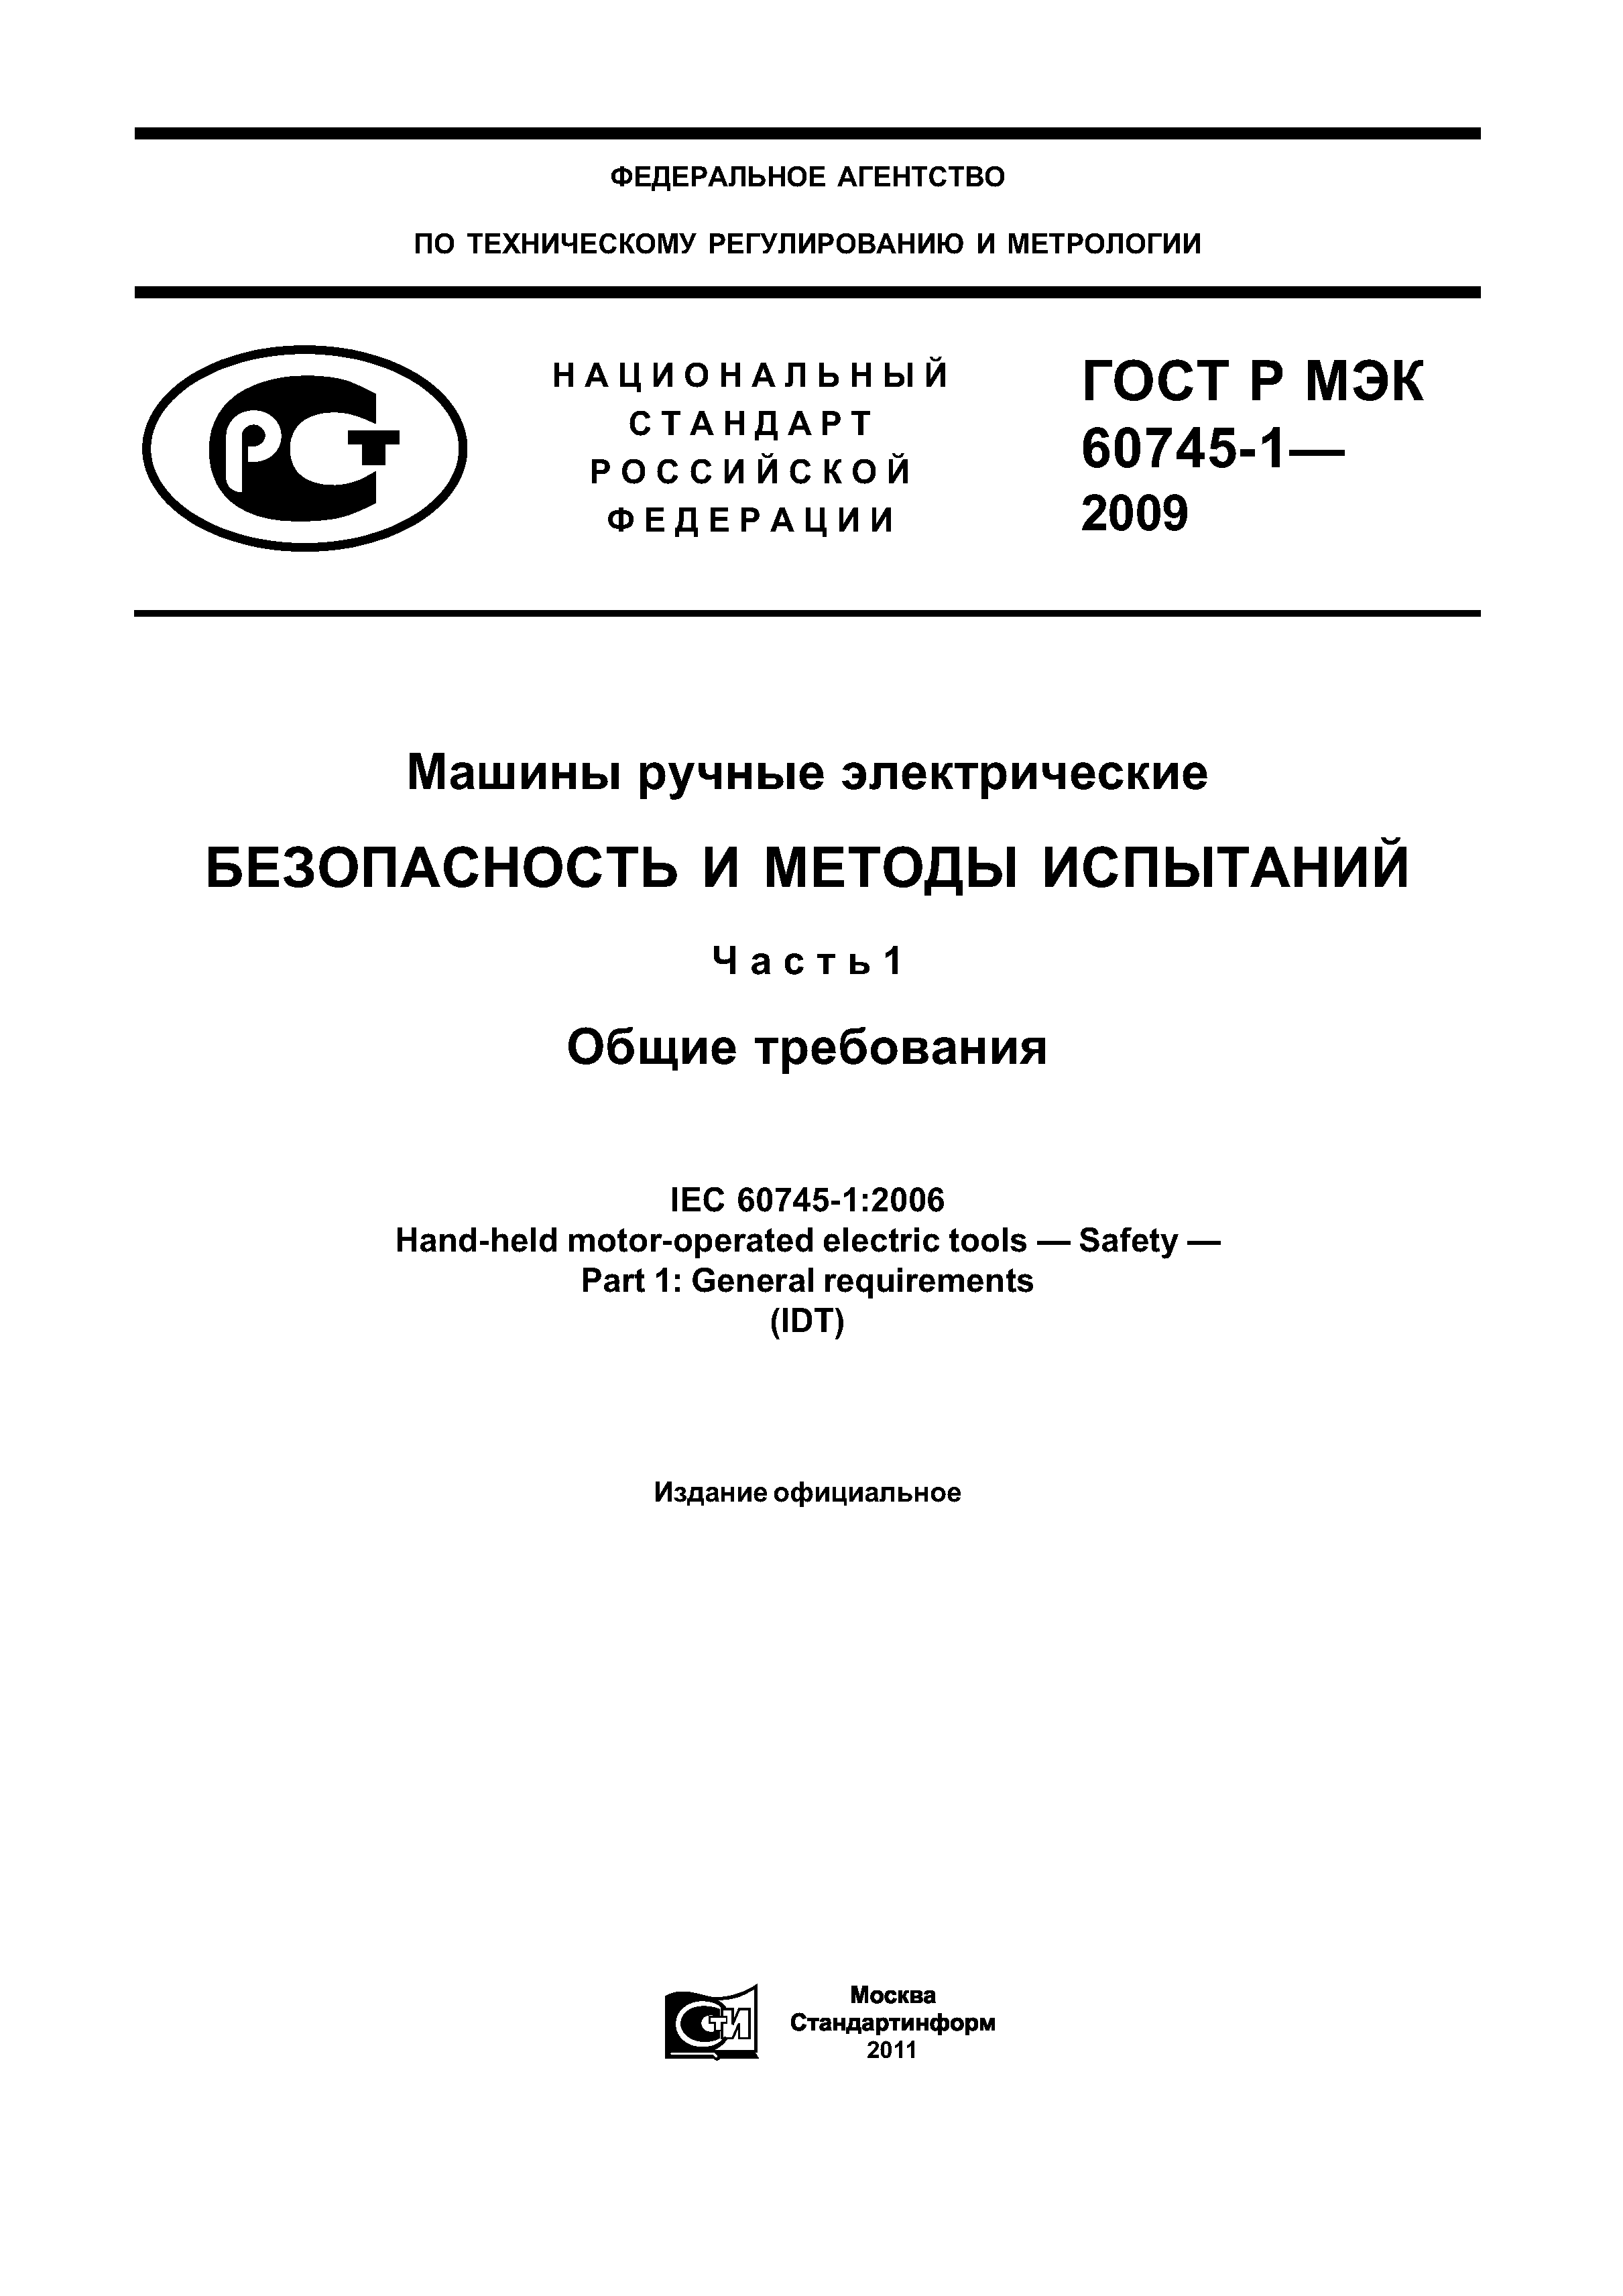 ГОСТ Р МЭК 60745-1-2009